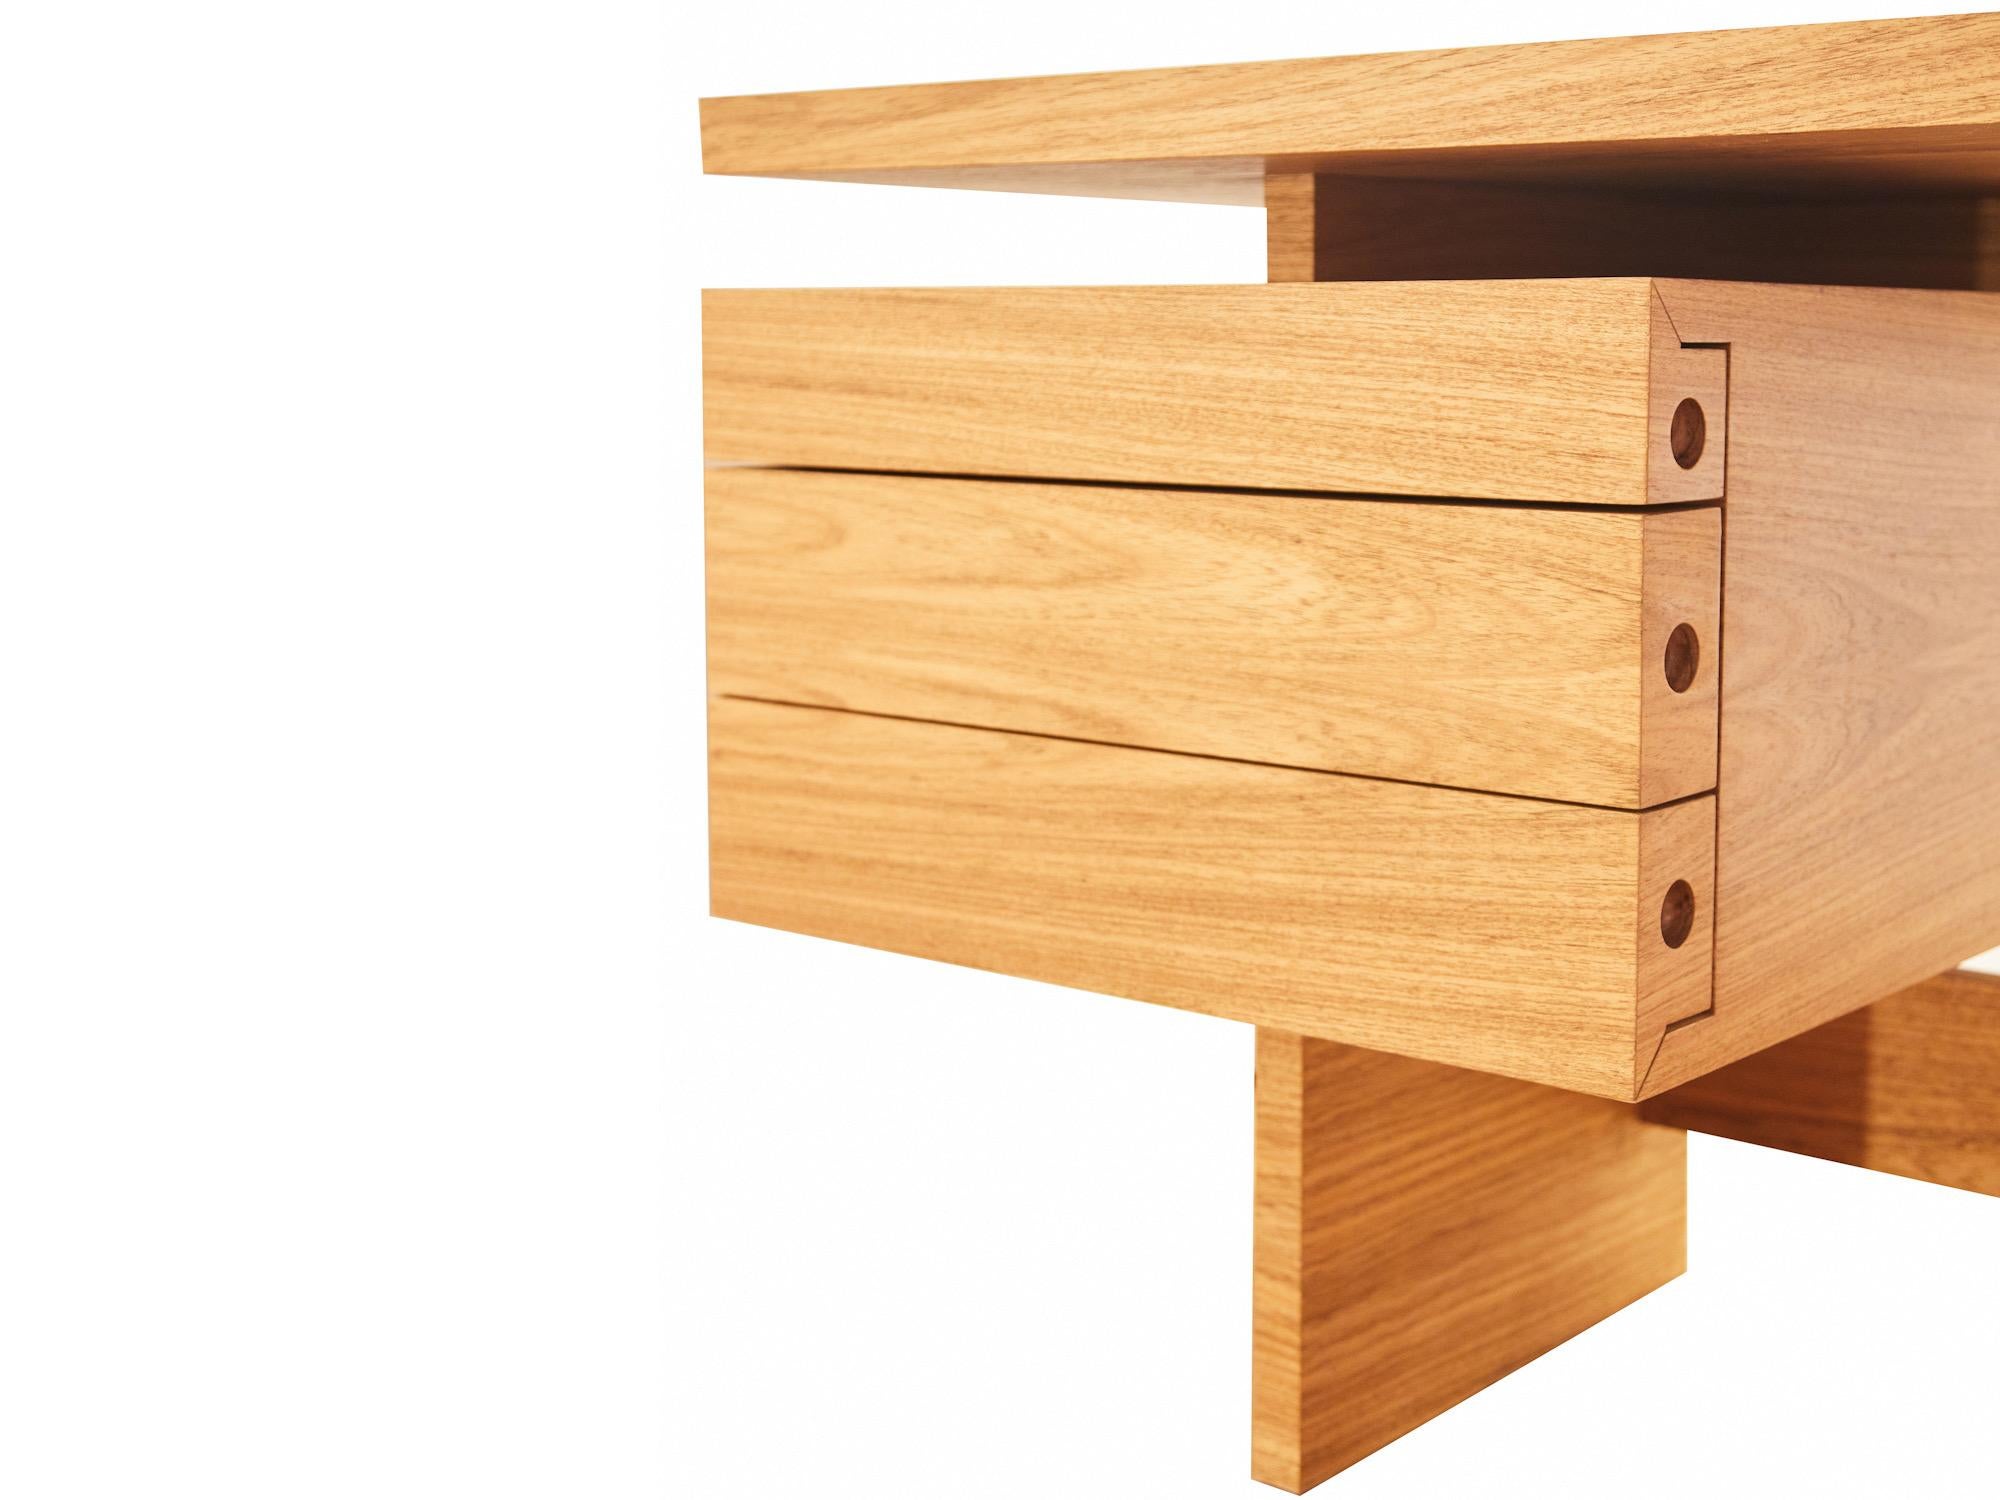 Brazilian Lia S Desk Freijo Wood For Sale